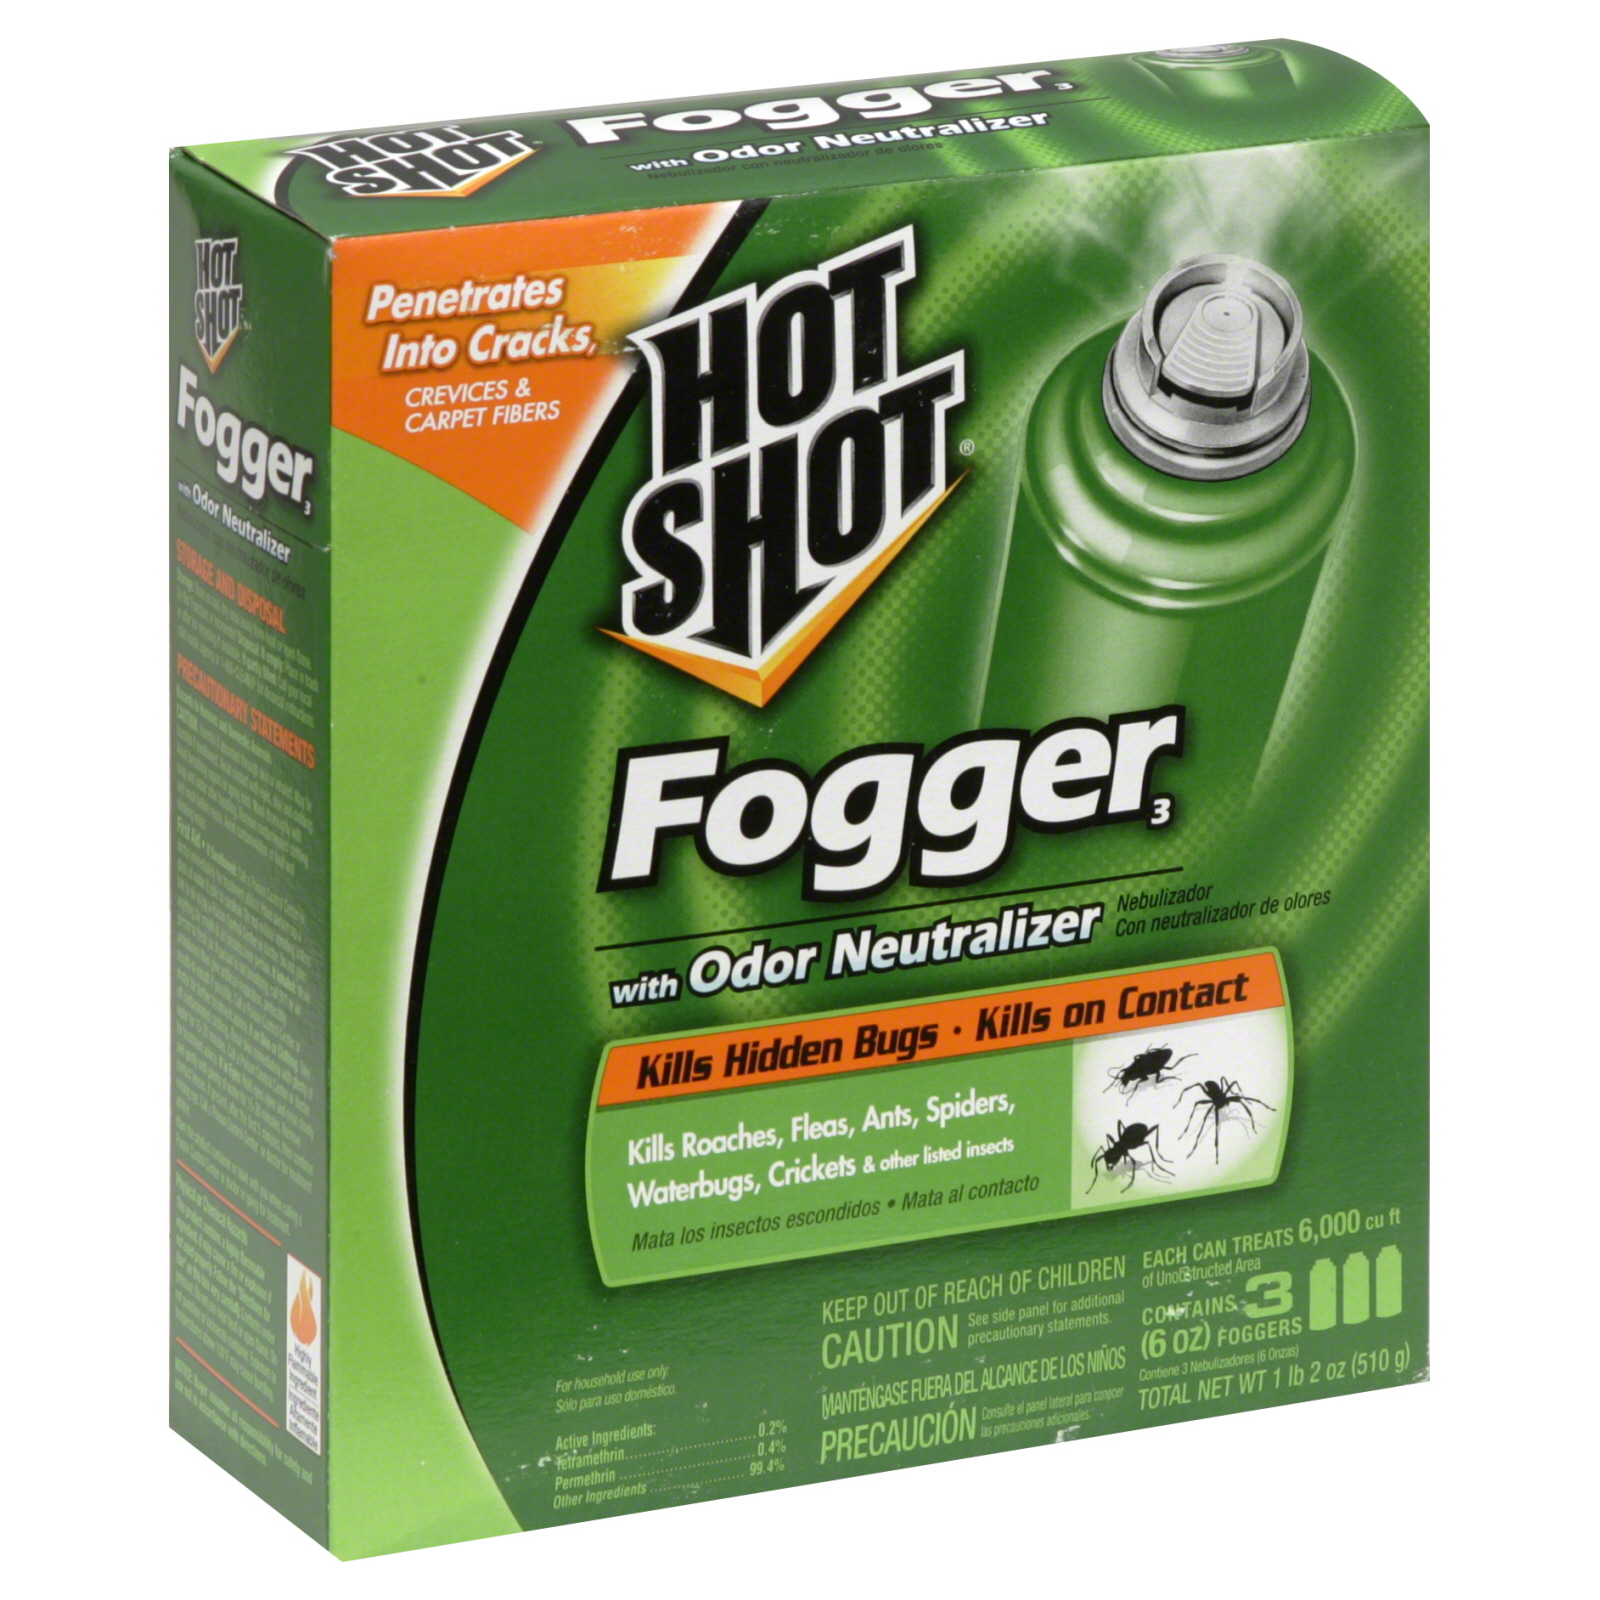 Hot Shot Gear Fogger 3, with Odor Neutralizer, 3 - 6 oz foggers [1 lb 2 oz (510 g)]